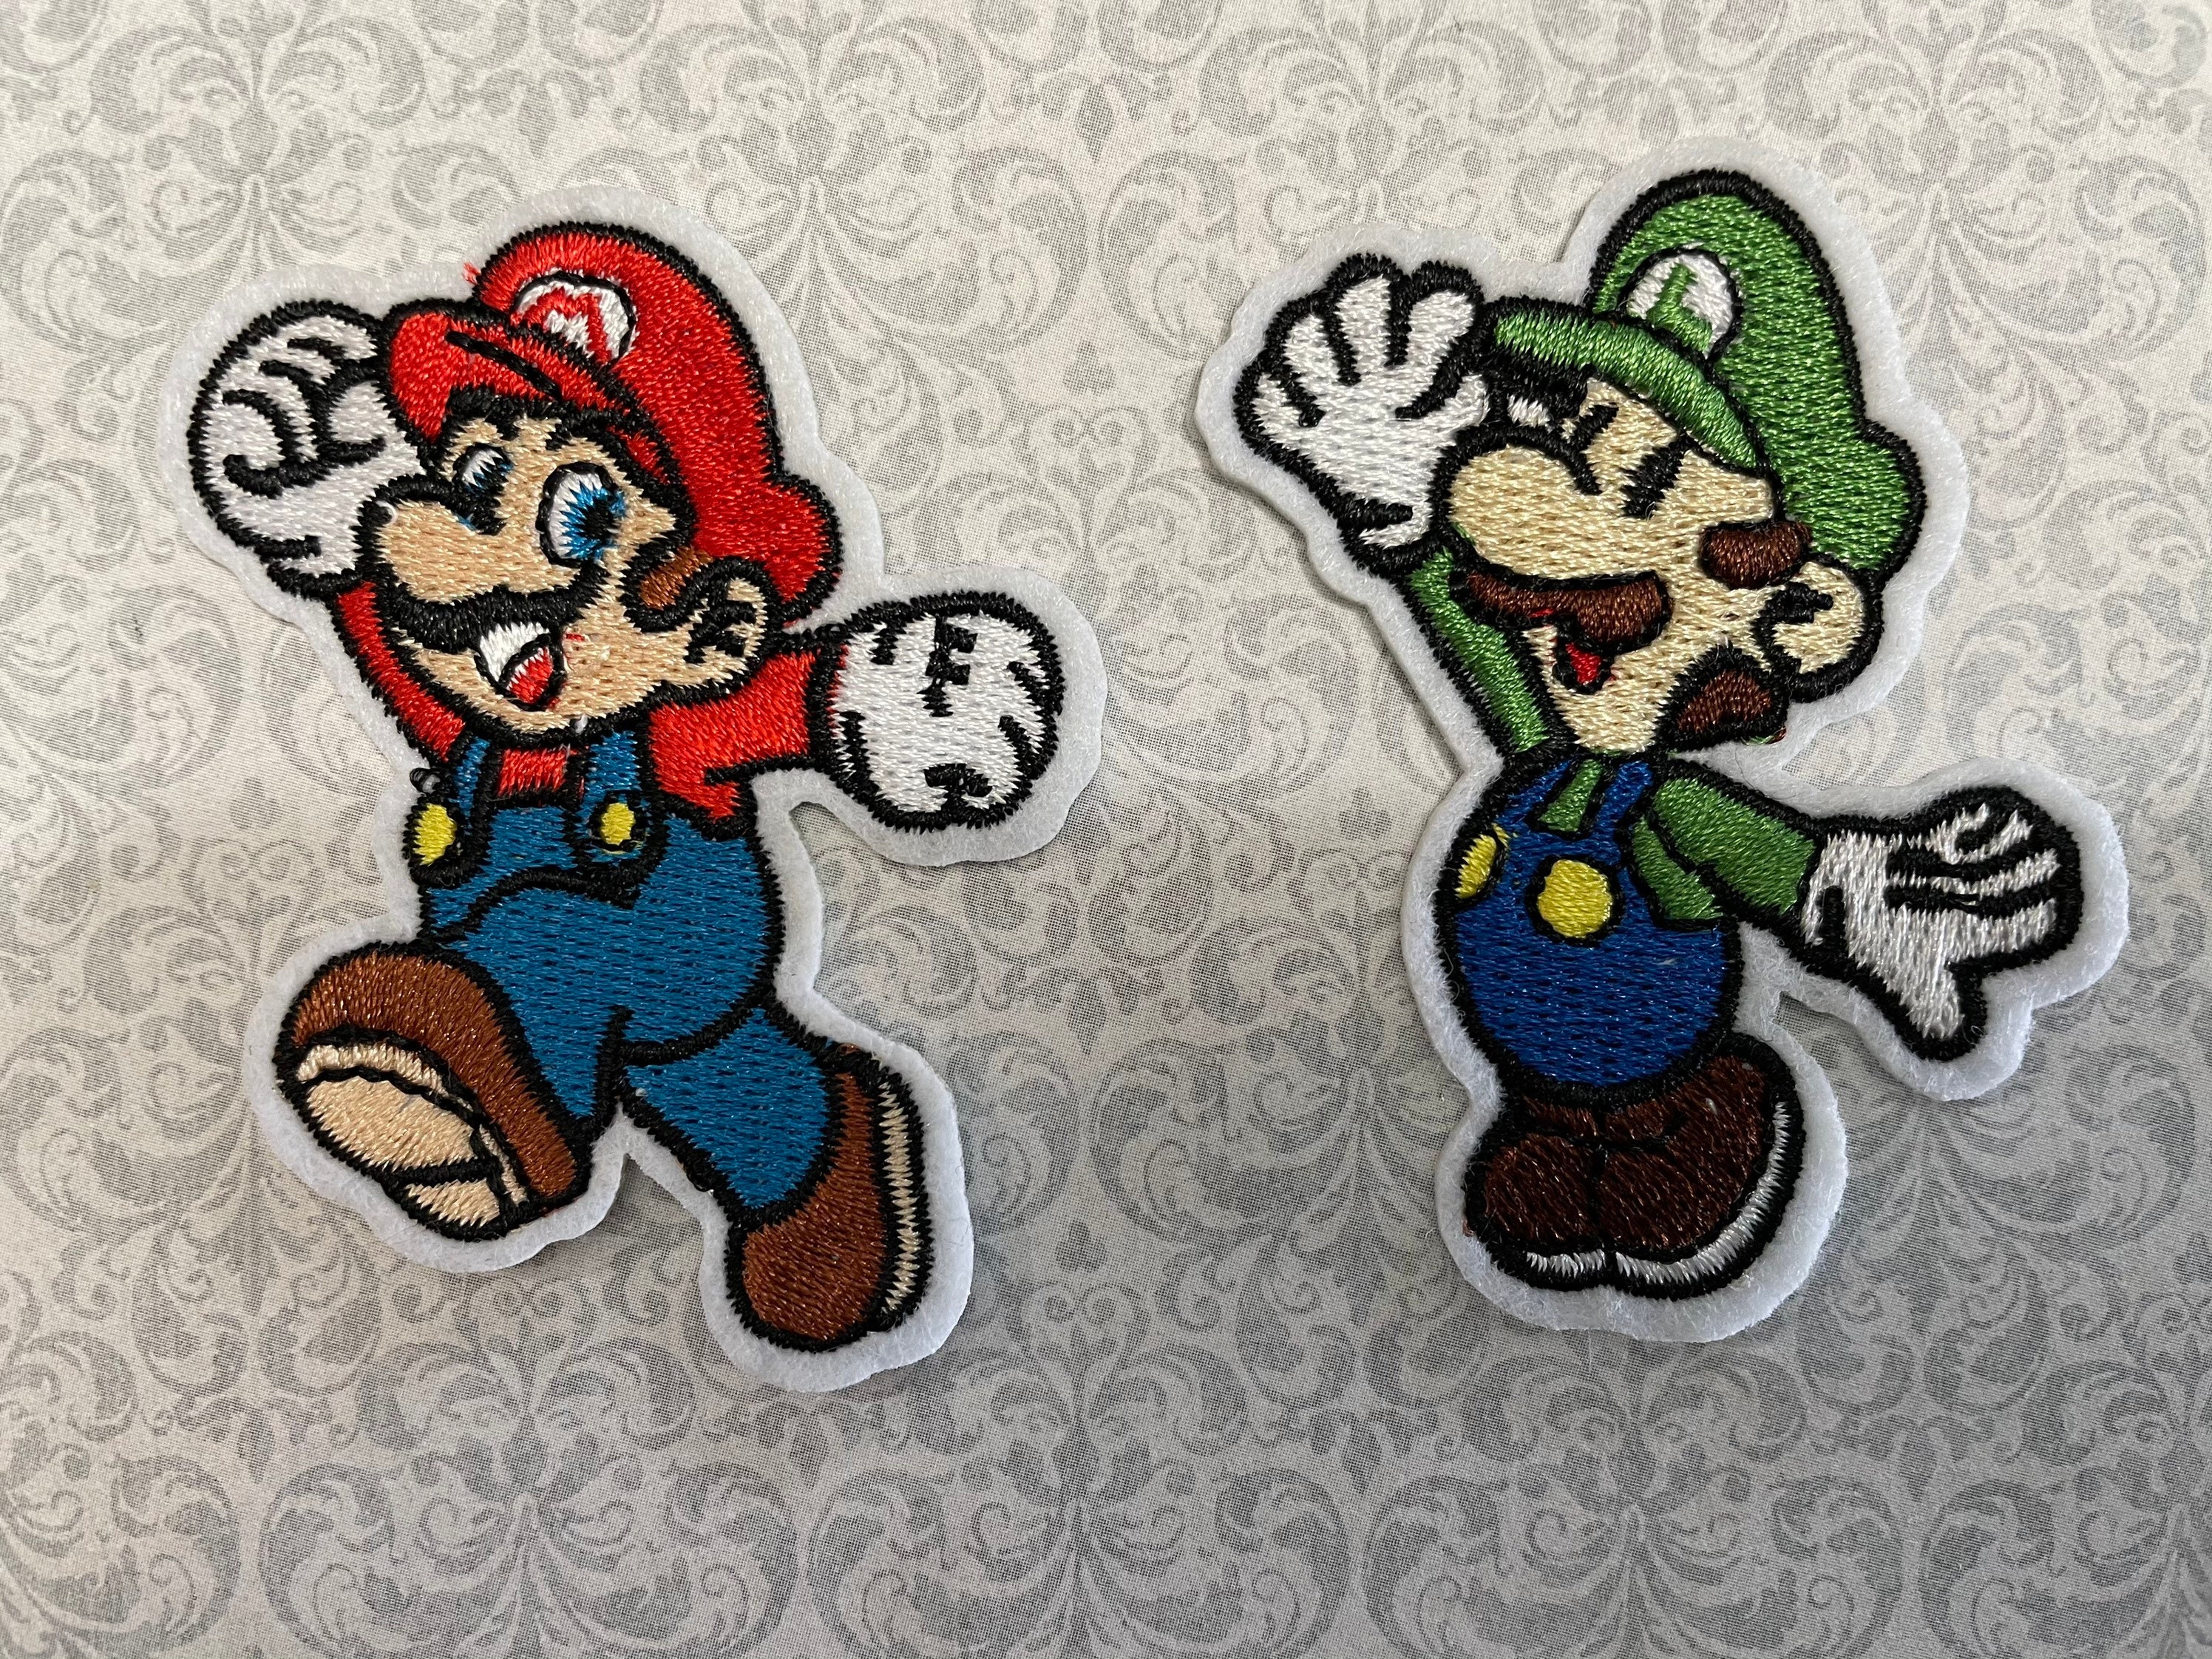 8 Bit Mario or Luigi Racoon Tail Shiny Metallic Embroidery Iron On patch.  Super Mario Bros. Pixelart.